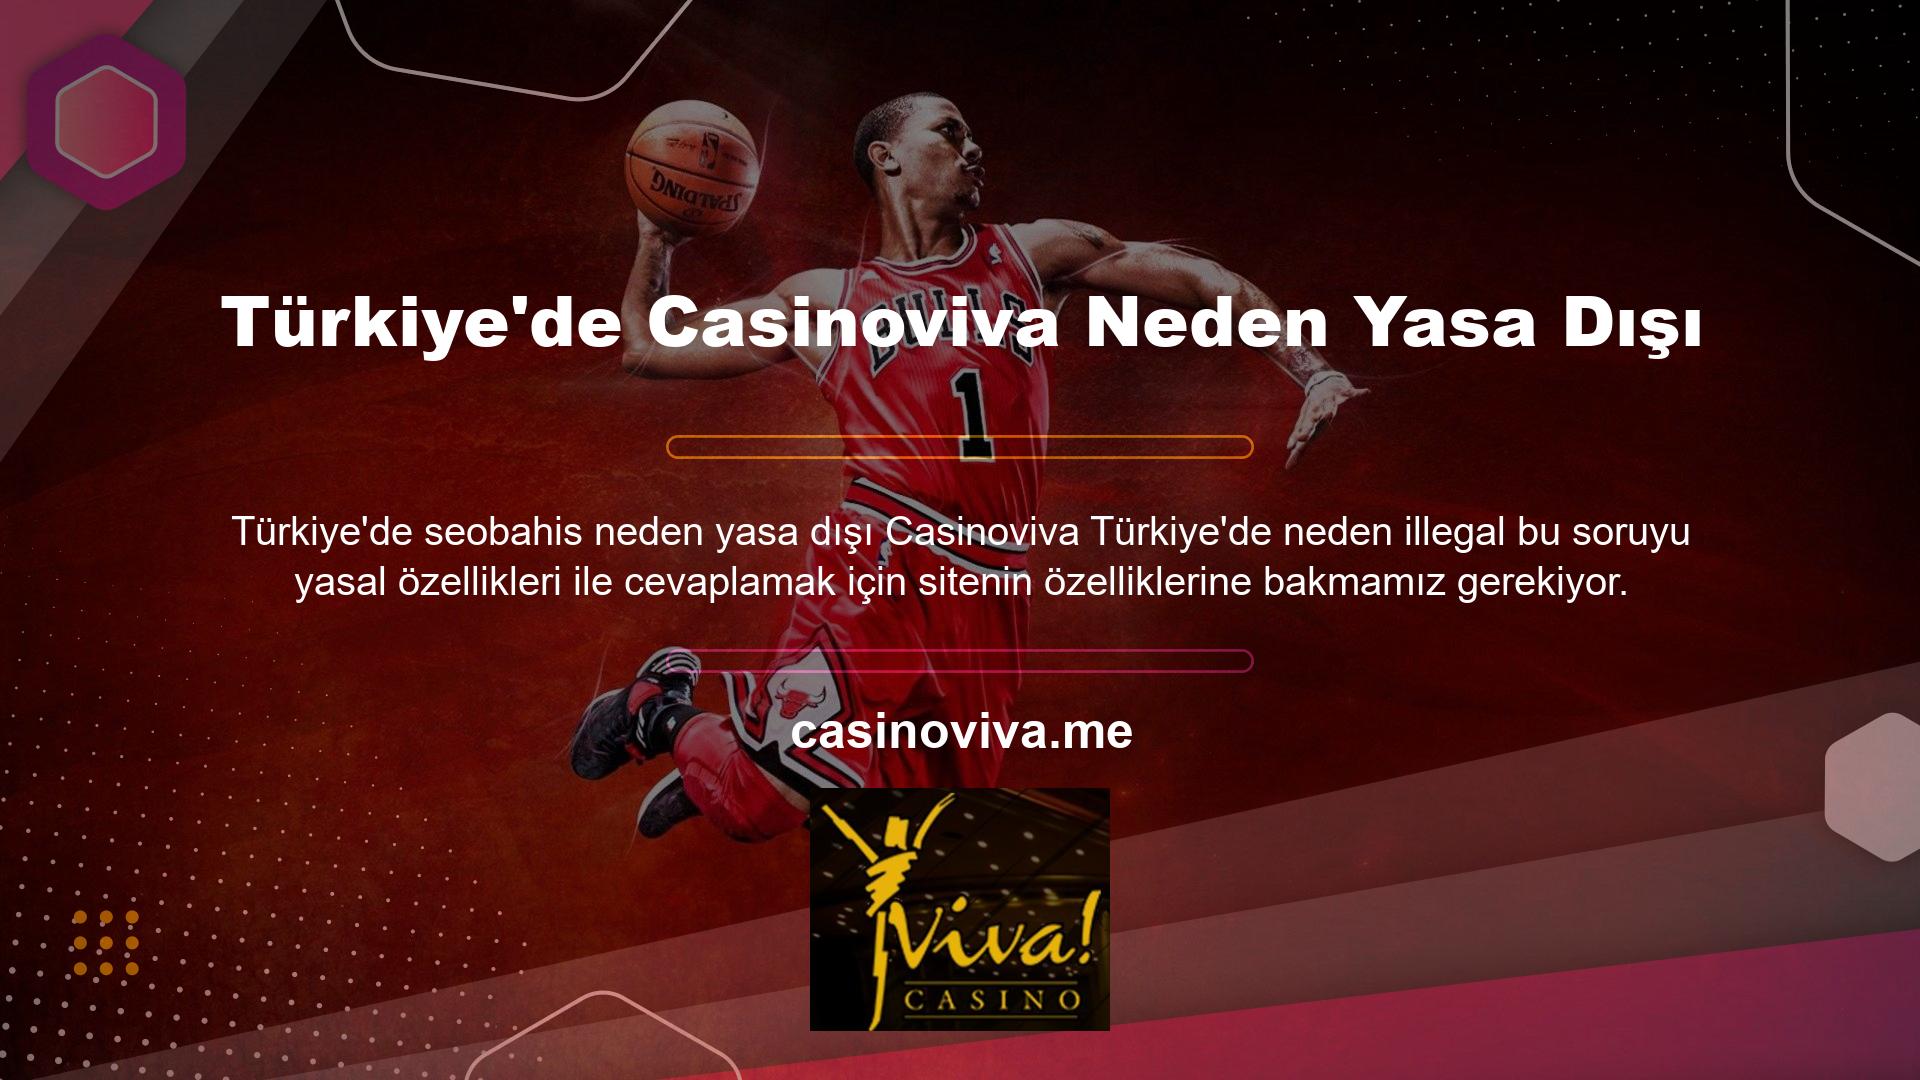 Casinoviva web sitesi Türkiye pazarında yasal olarak tanınmamakta ve uluslararası casino platformlarında yasal formaliteleri tamamlamış ve hizmet kabul etmiş bir şirket olarak tanınmaktadır